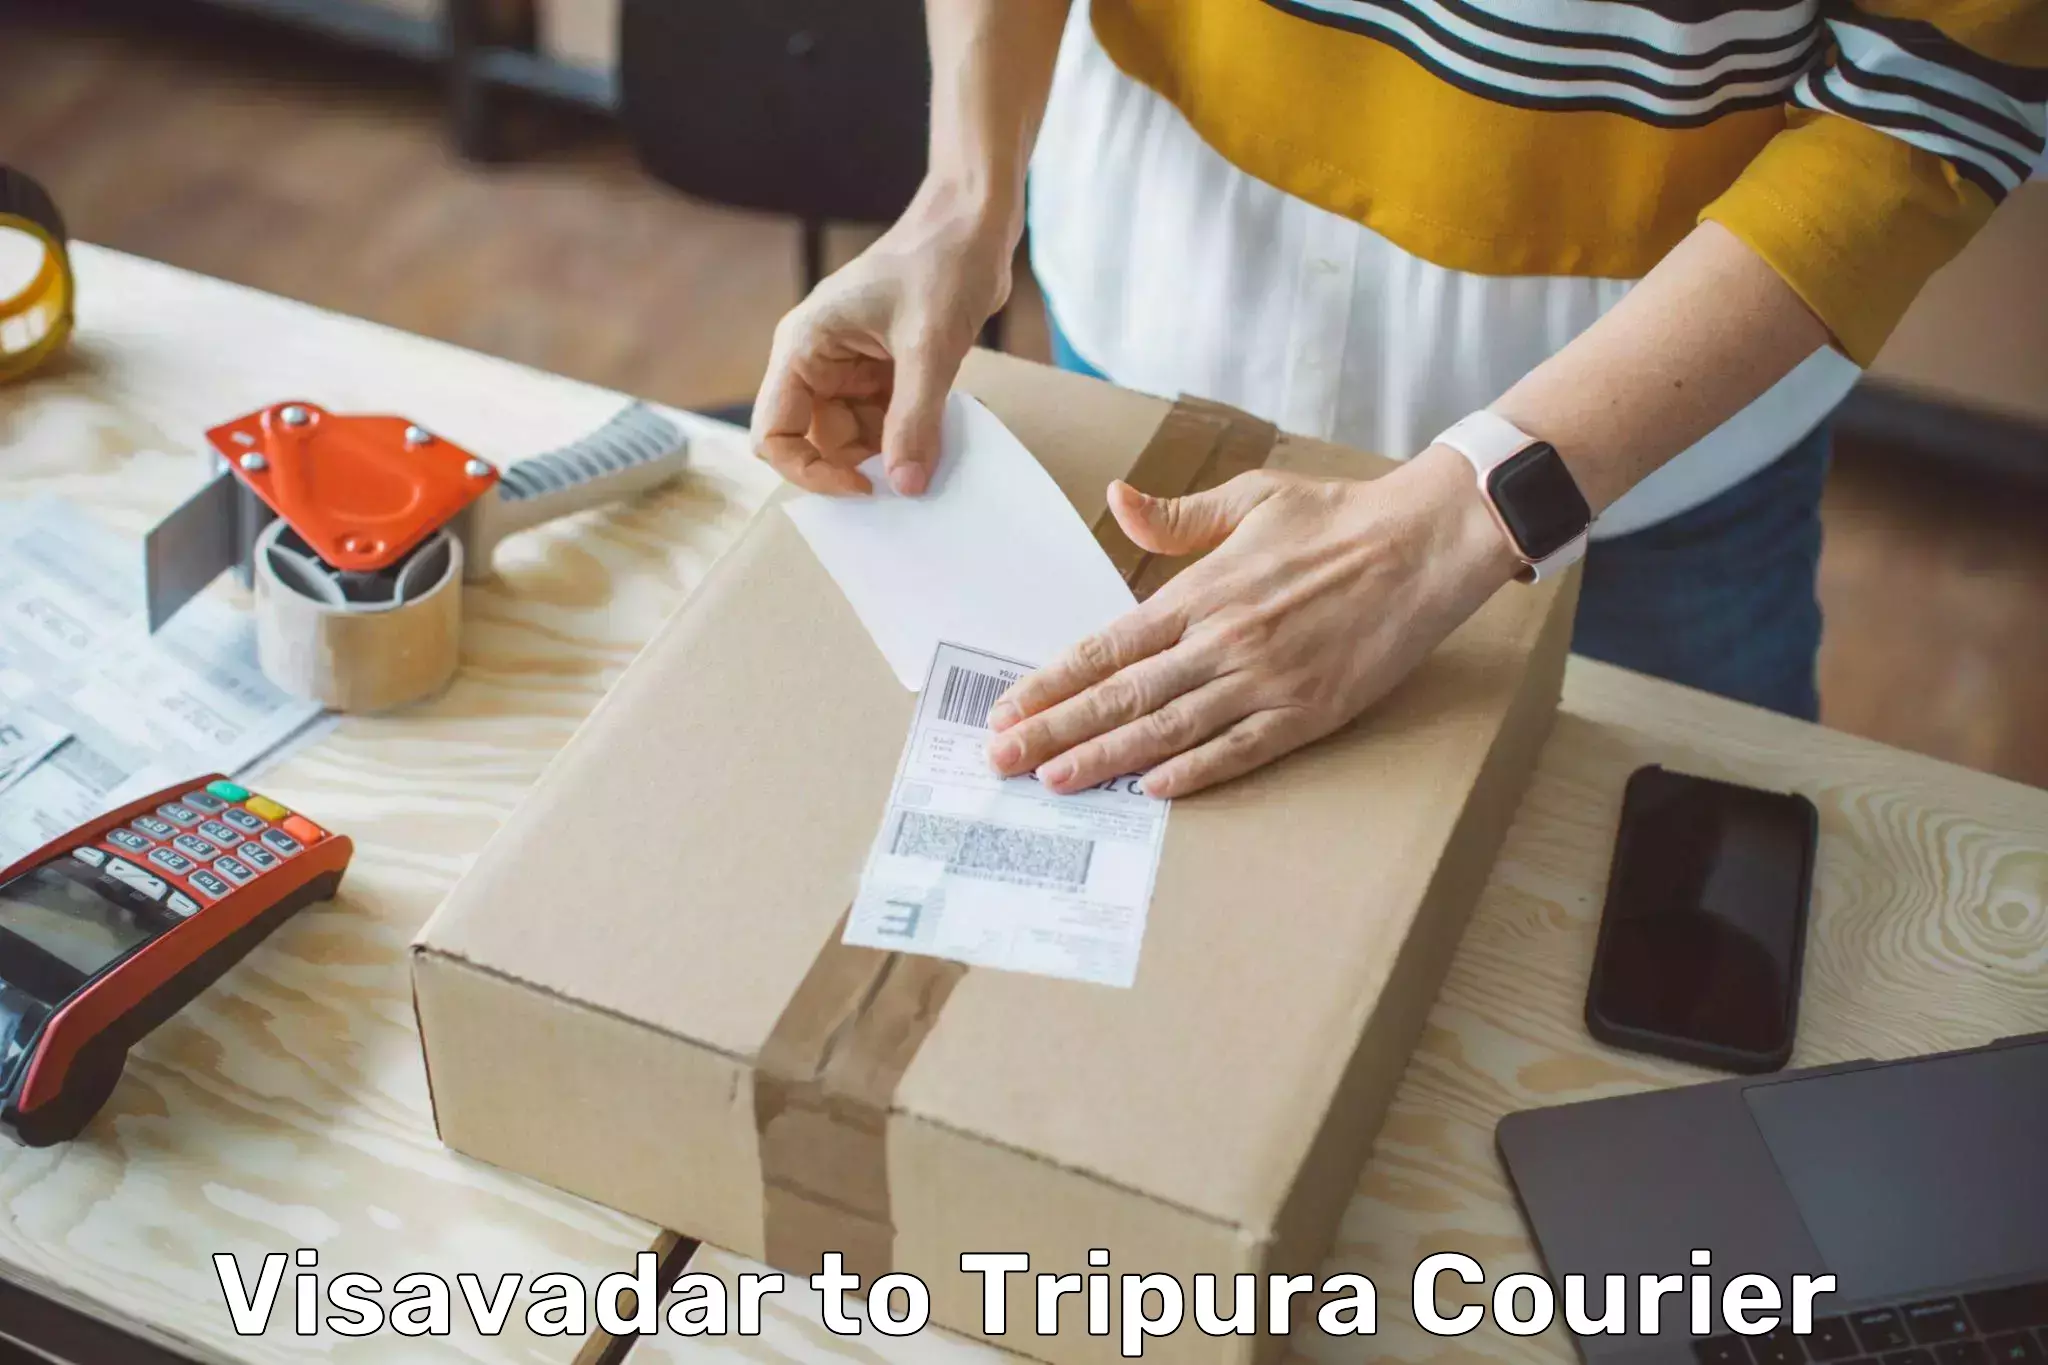 Bulk shipment Visavadar to Tripura